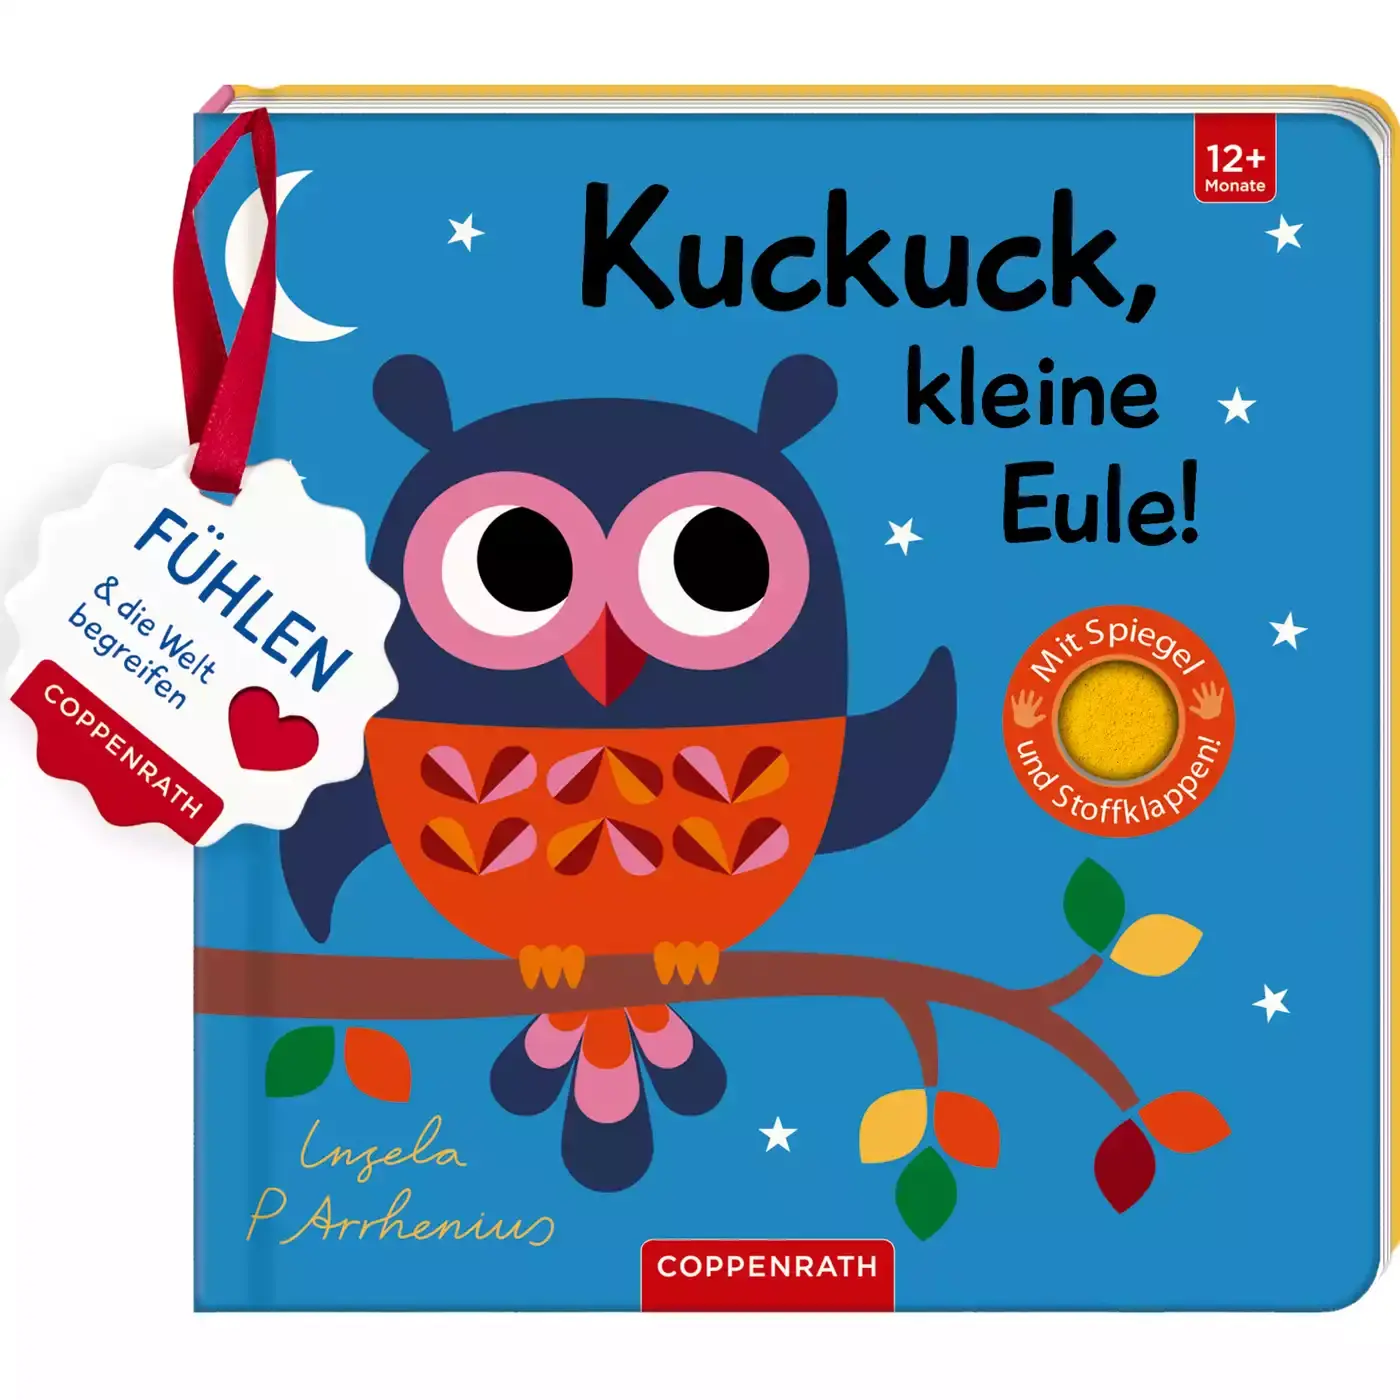 Kuckuck, kleine Eule! COPPENRATH 2000574906706 3